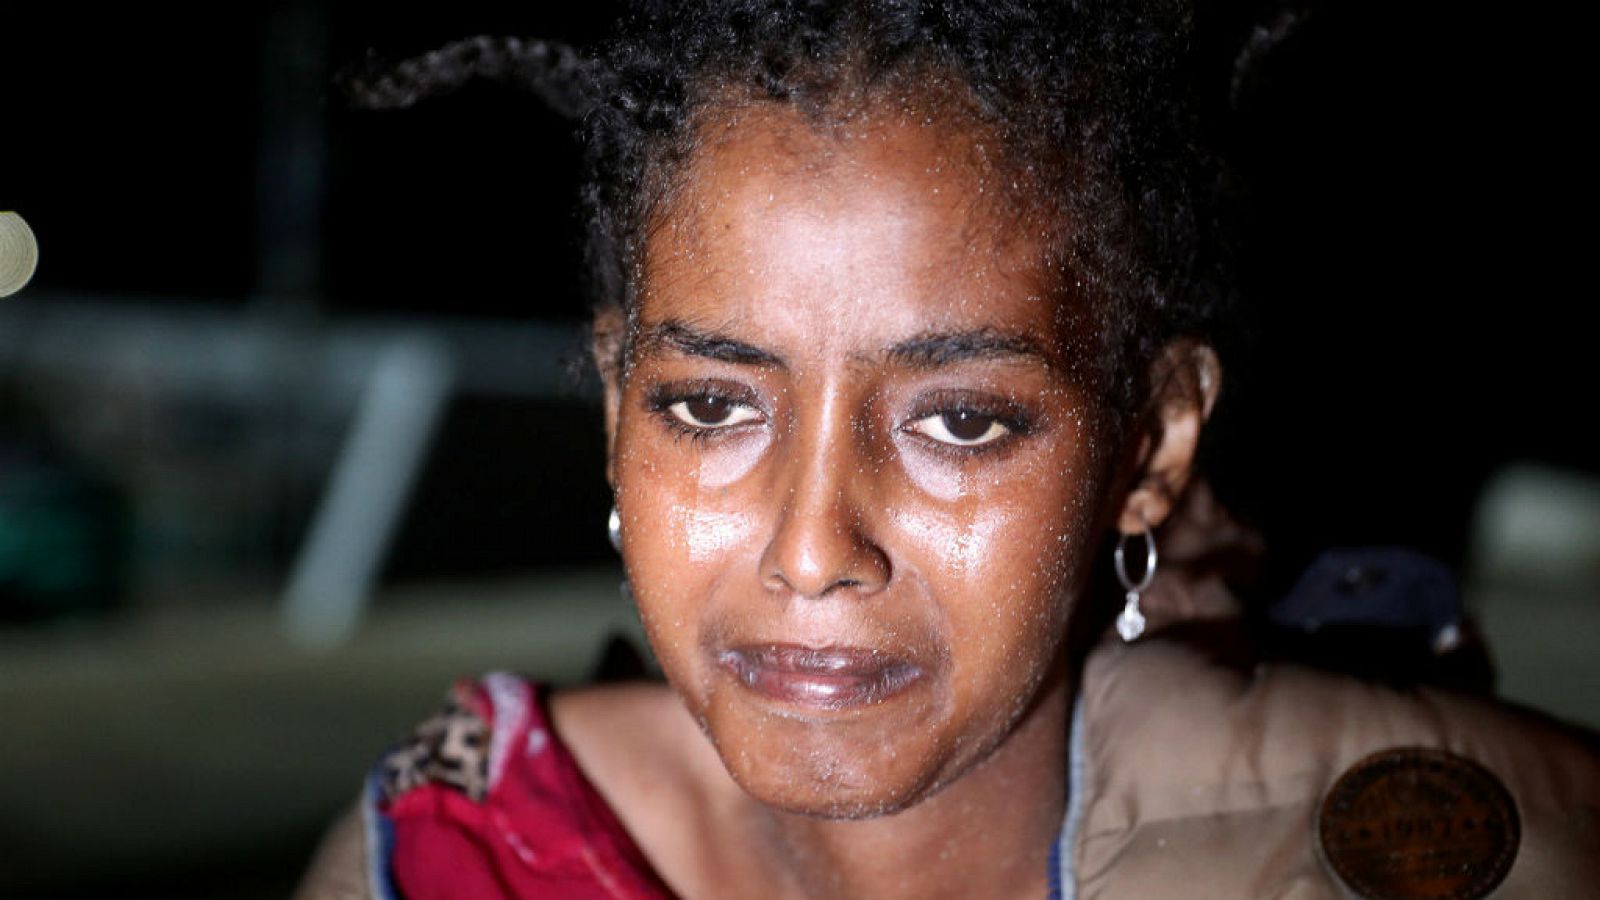 Cinco continentes - El infierno de ser mujer migrante en Libia - 01/08/18 - Escuchar ahora